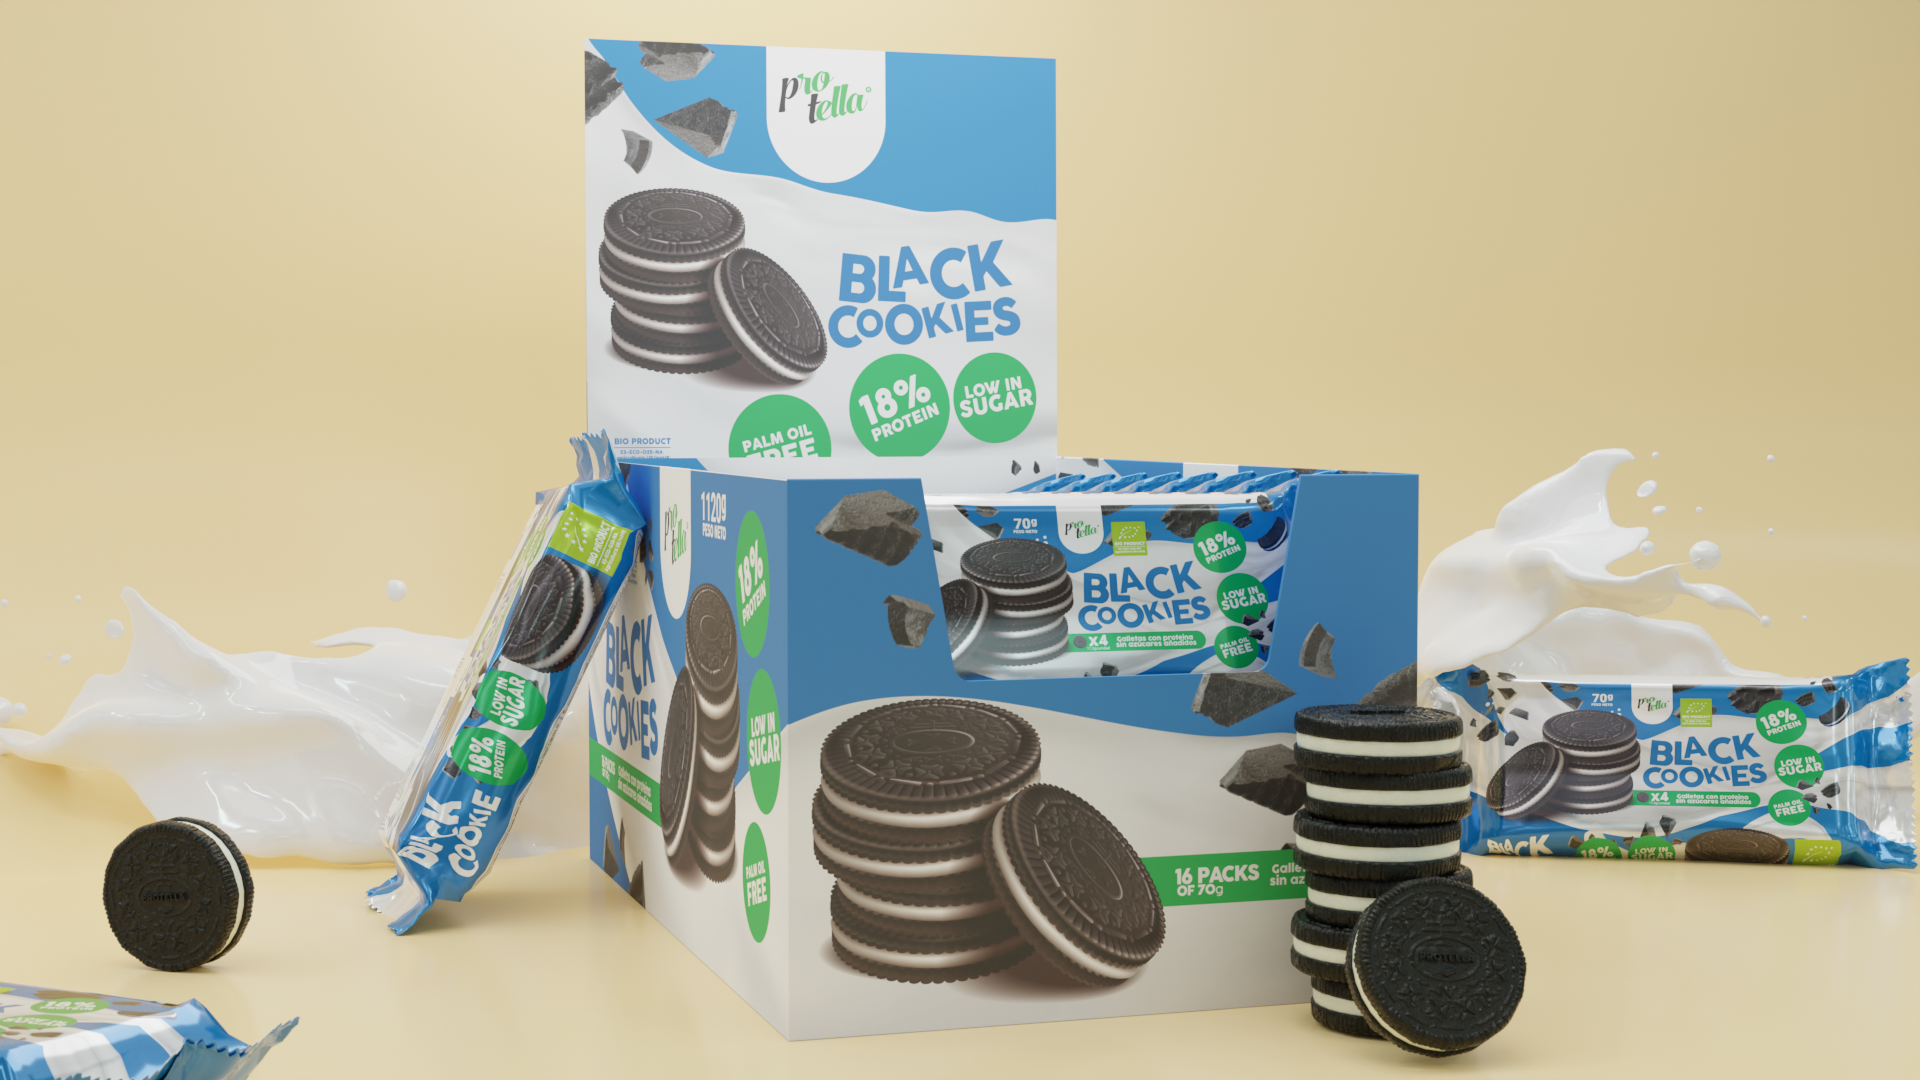 Pack "x16 Black Cookies"